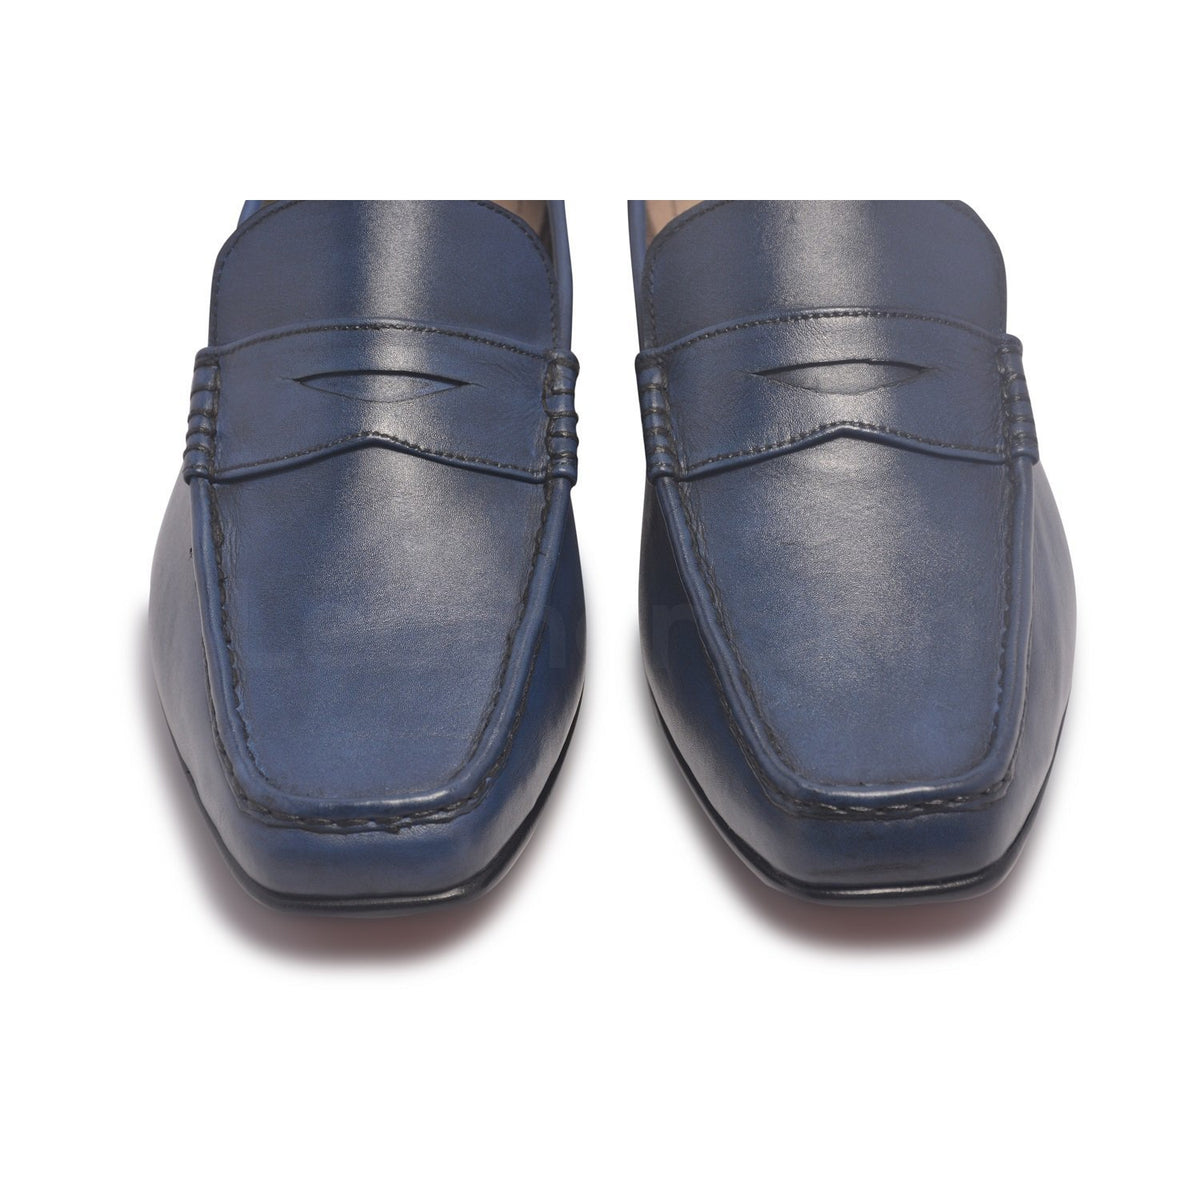 Men Blue Penny Loafer Slip-On Genuine Leather Shoes - Leather Skin Shop